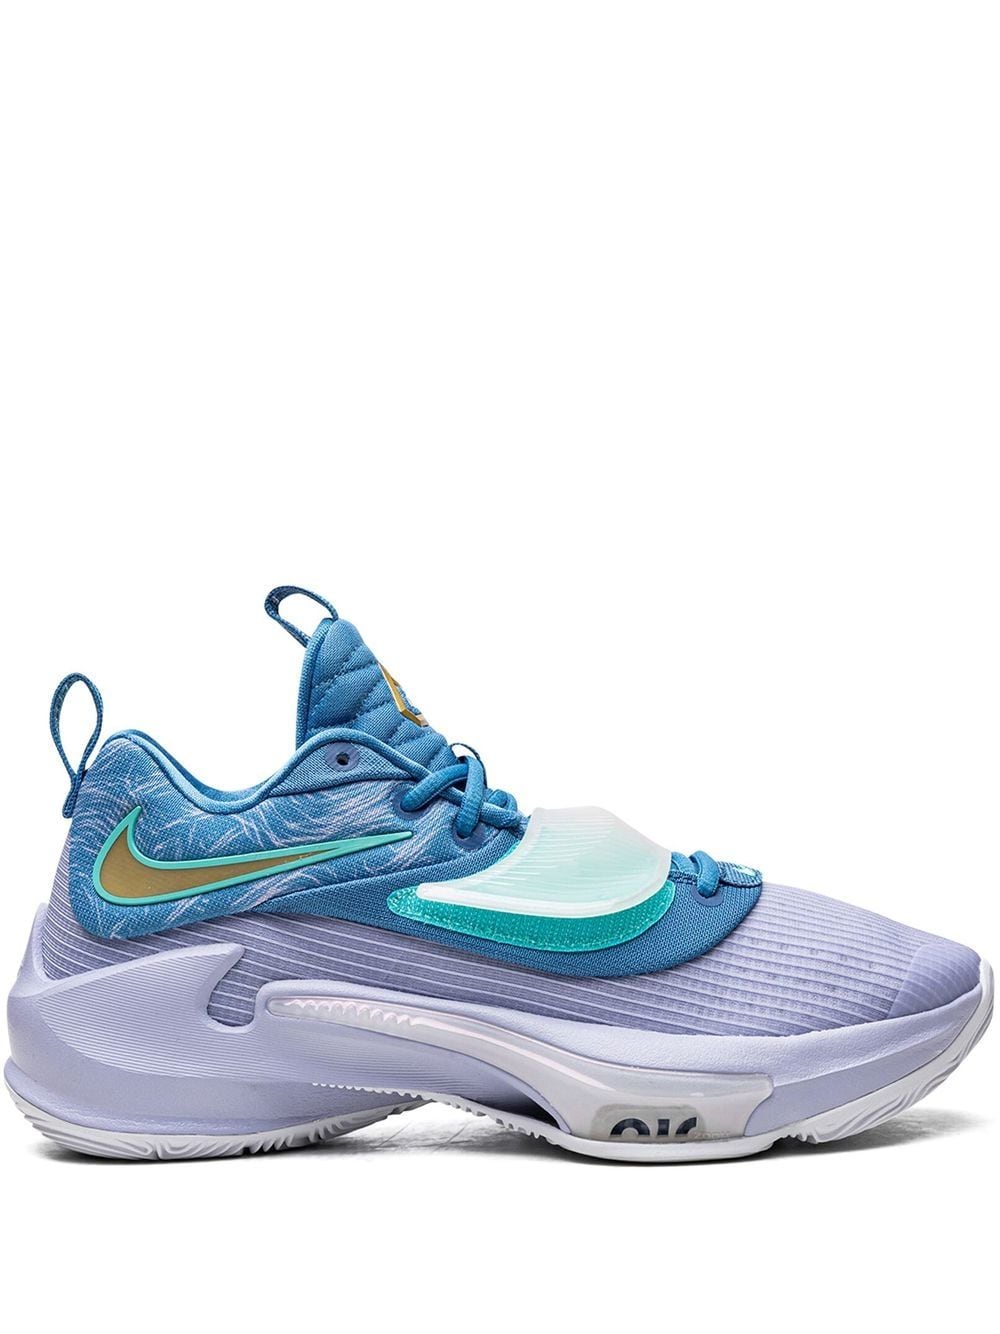 Nike Zoom Freak 3 "dutch" Sneakers In Blue